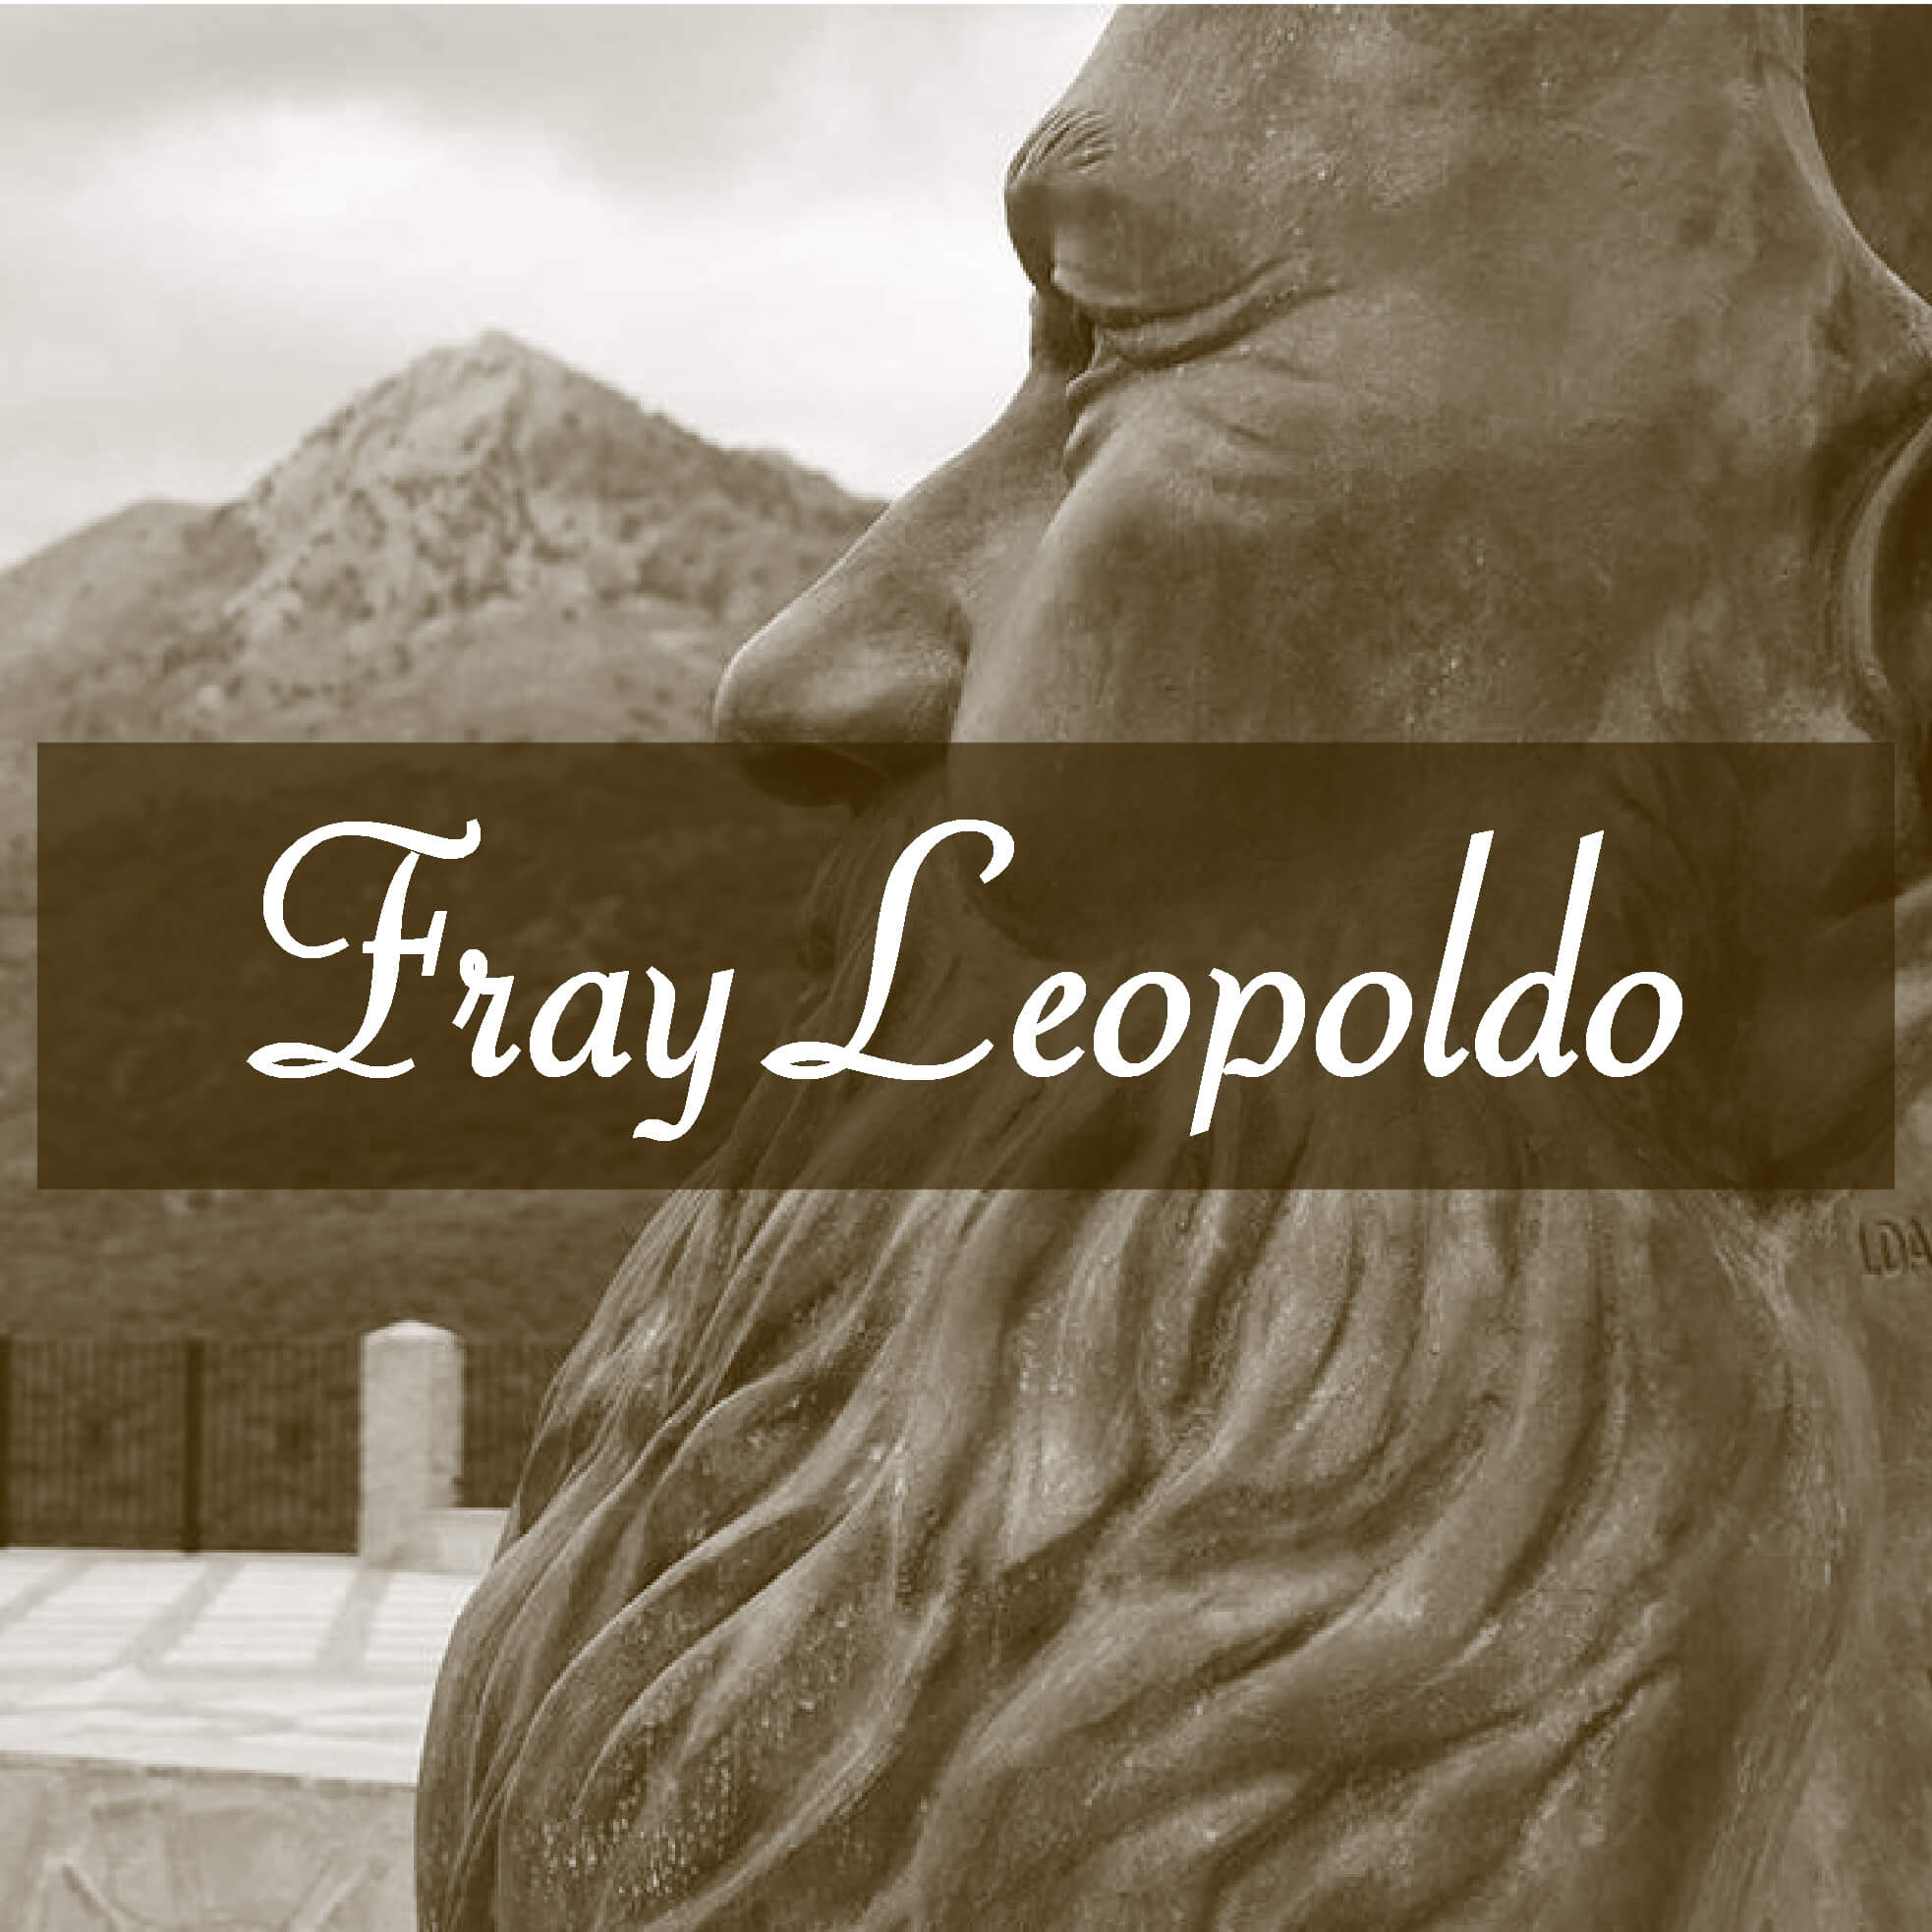 Fray Leopoldo De Alpandeire Historia Malaga